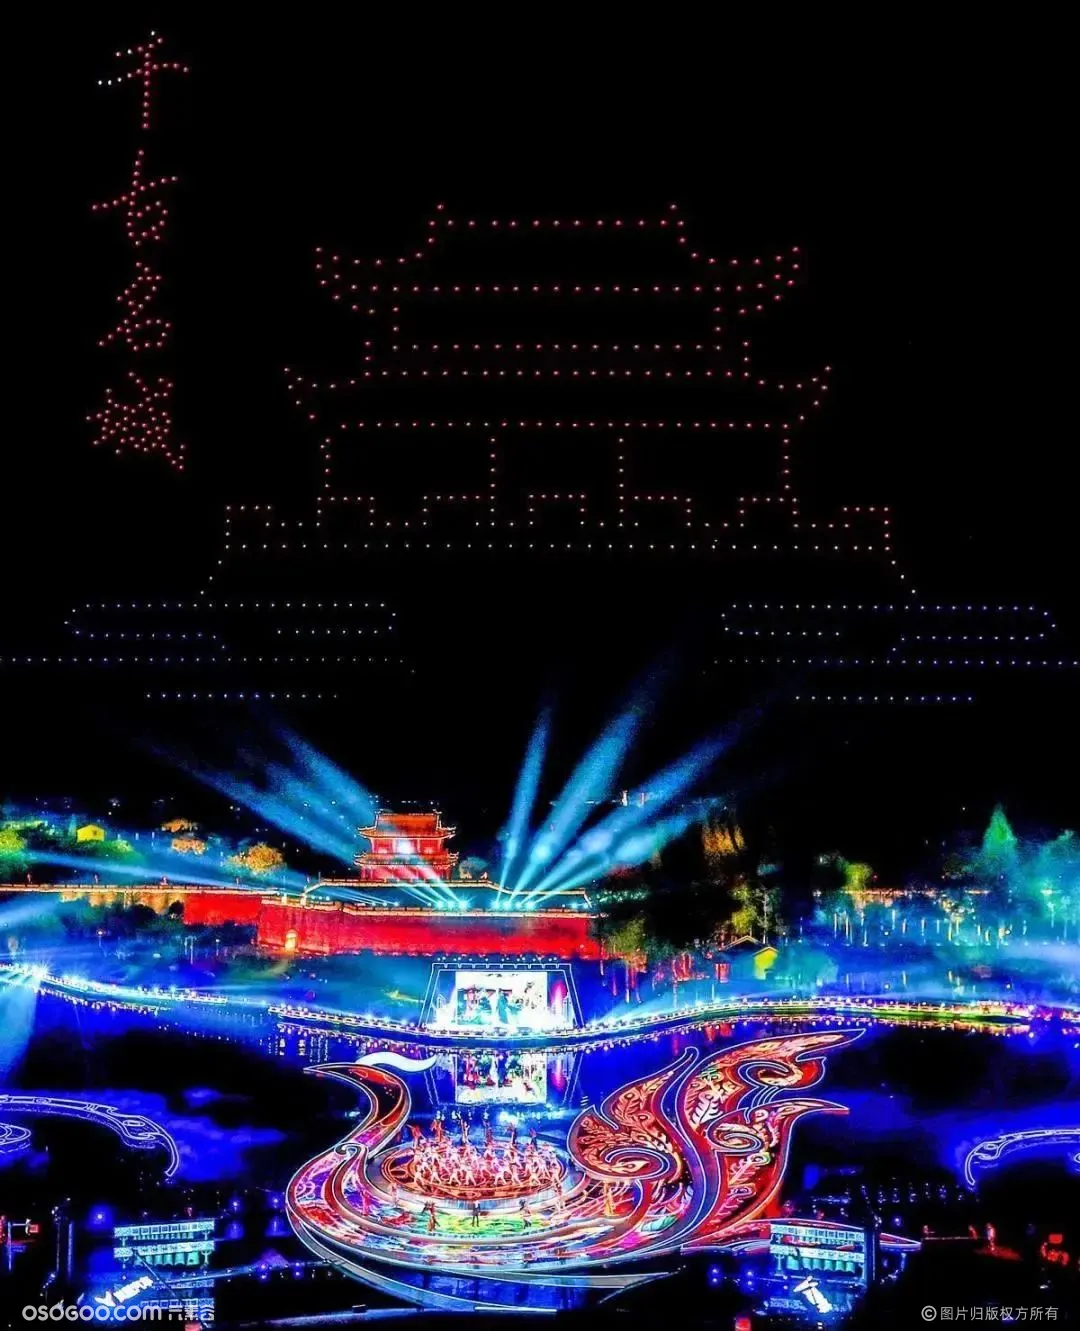 「 凤鸣九天 楚韵荆州 」首届楚文化节开幕式